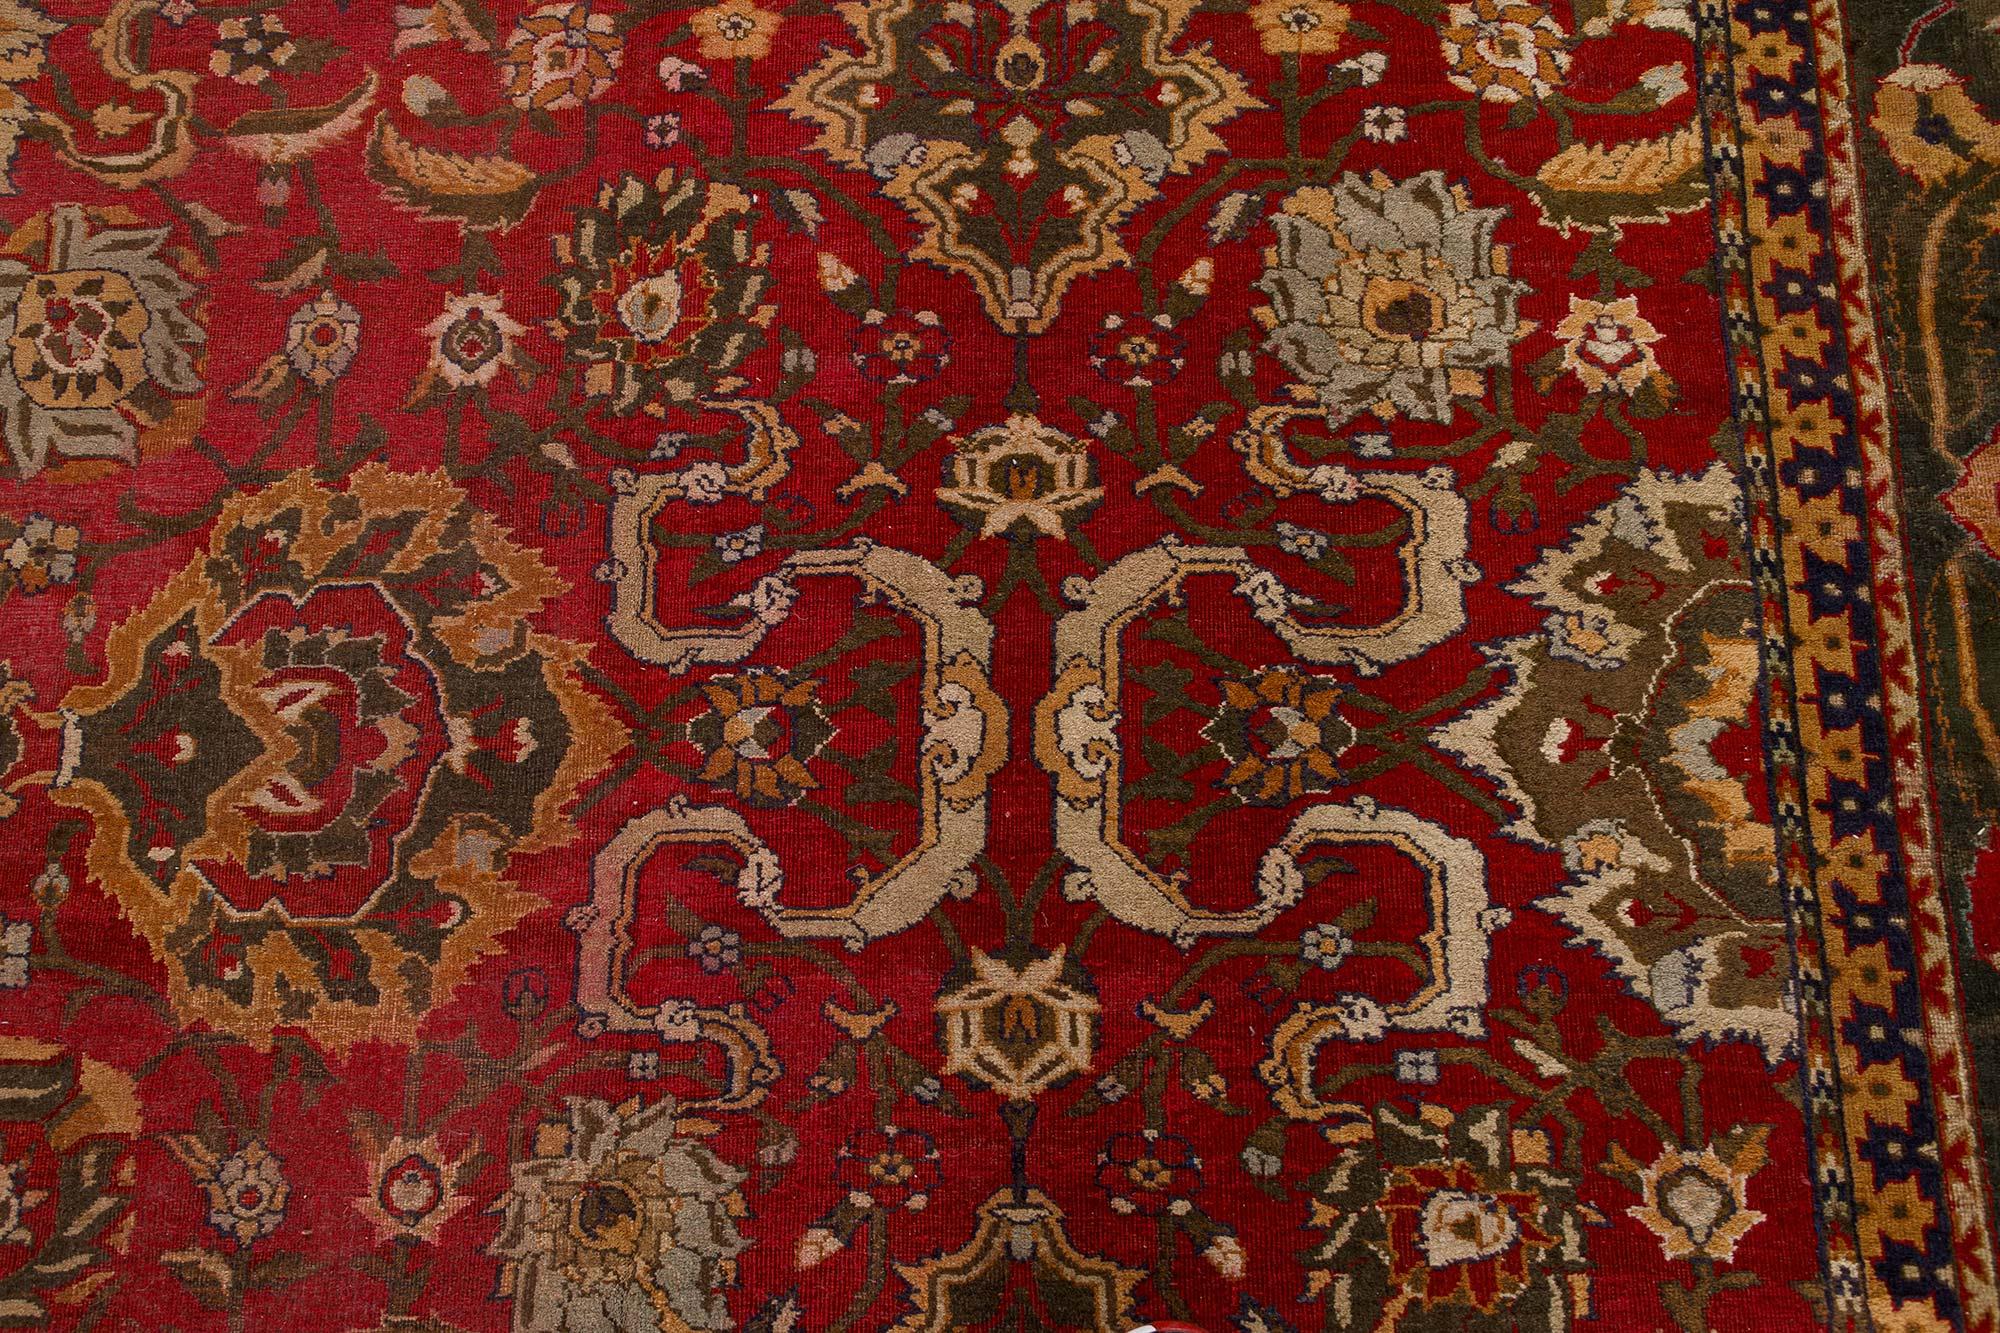 Authentischer indischer Agra-Wollteppich in Bold Red, handgefertigt
Größe: 13'0